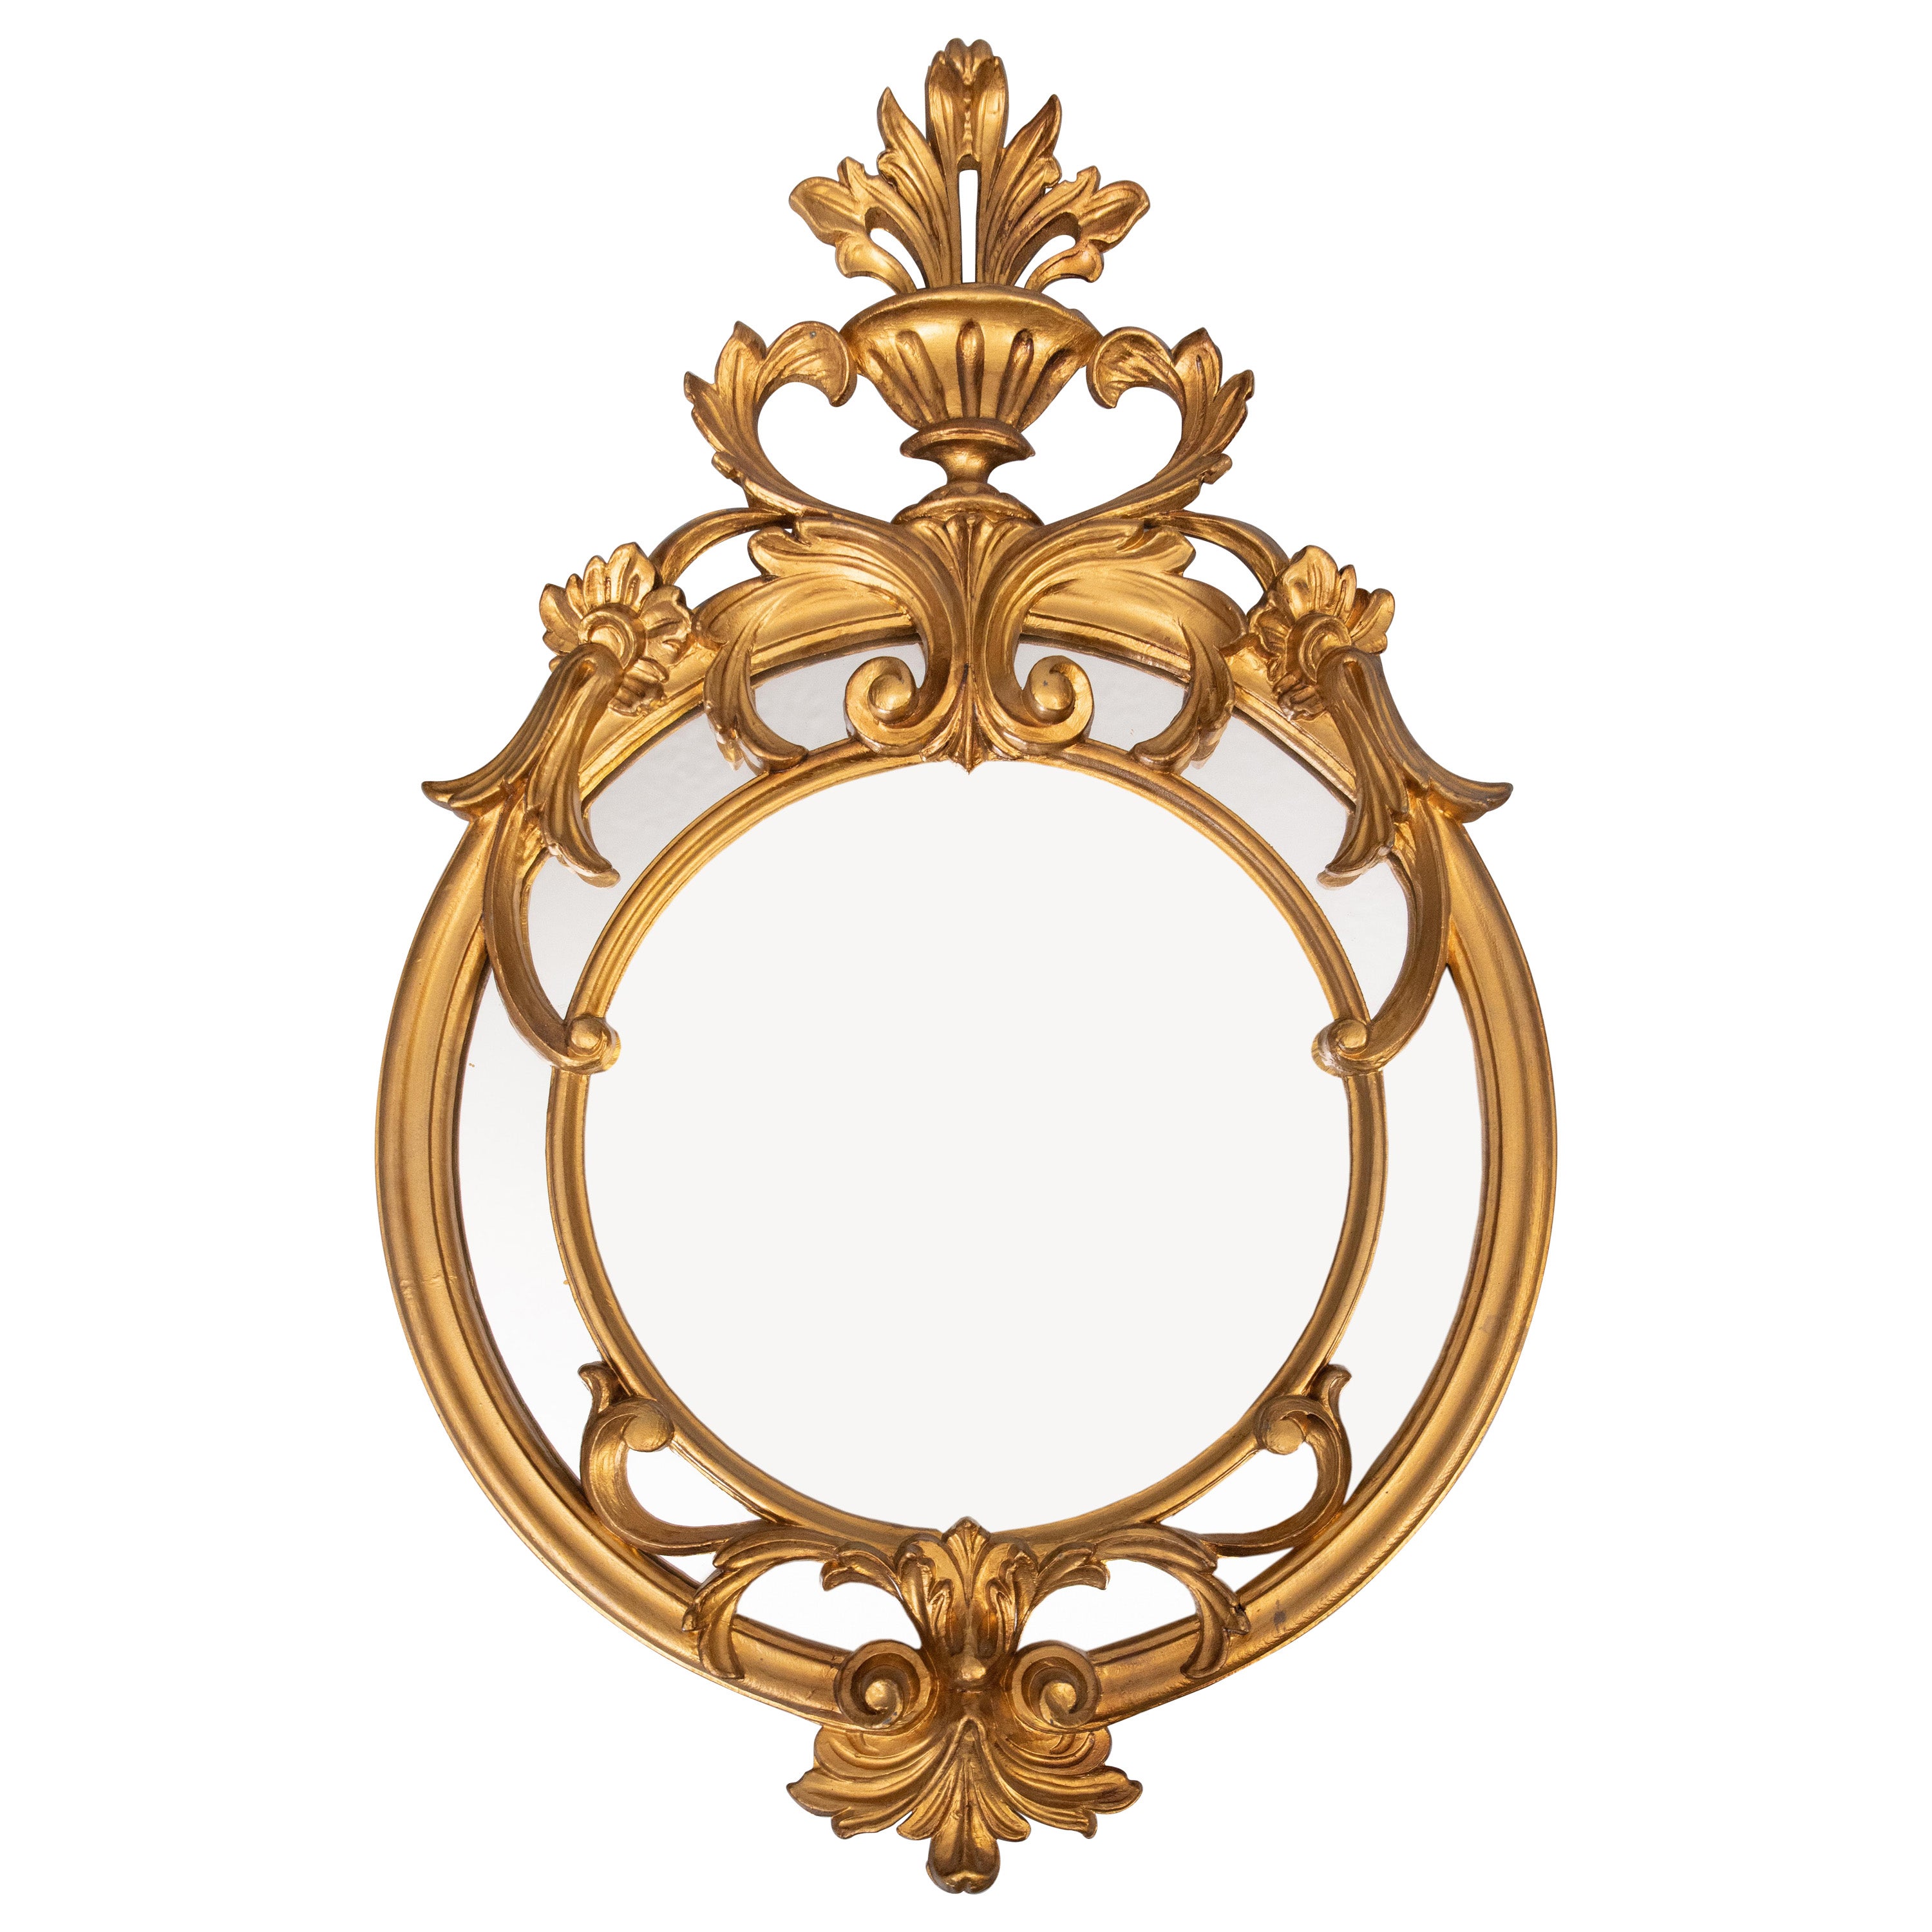 Vieux miroir italien en résine dorée de style néoclassique avec cimier